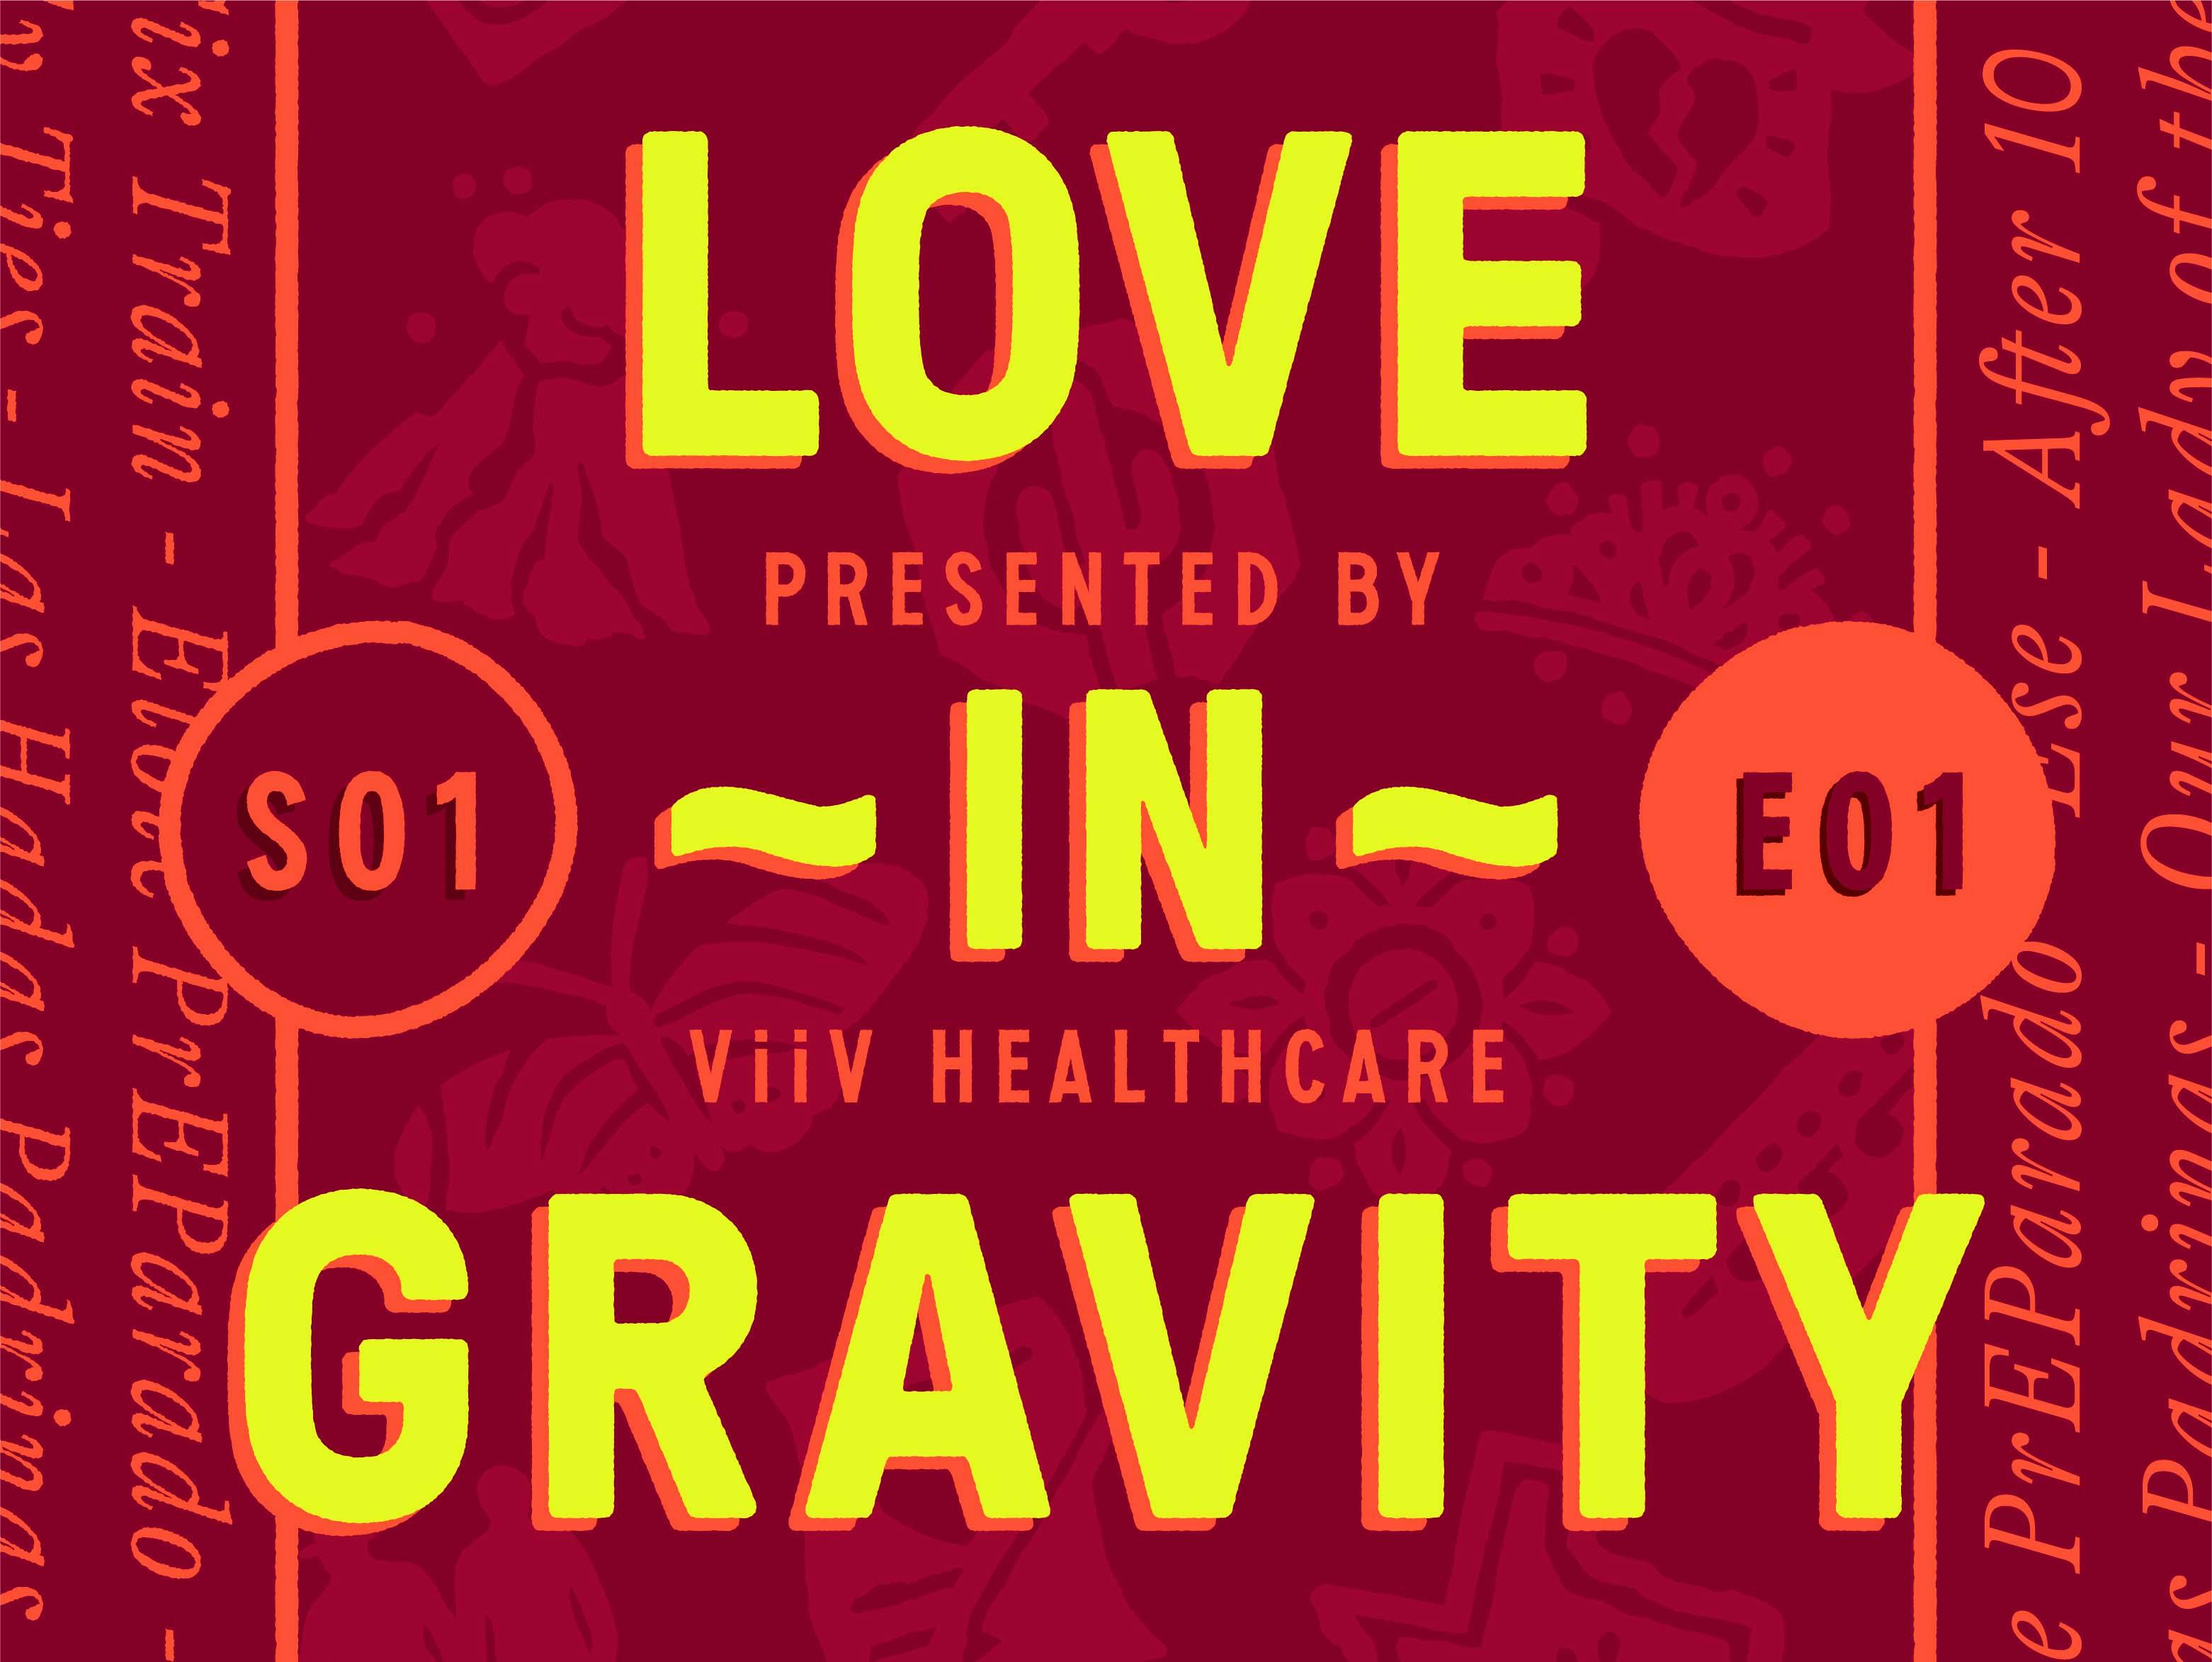 Love in gravity S01